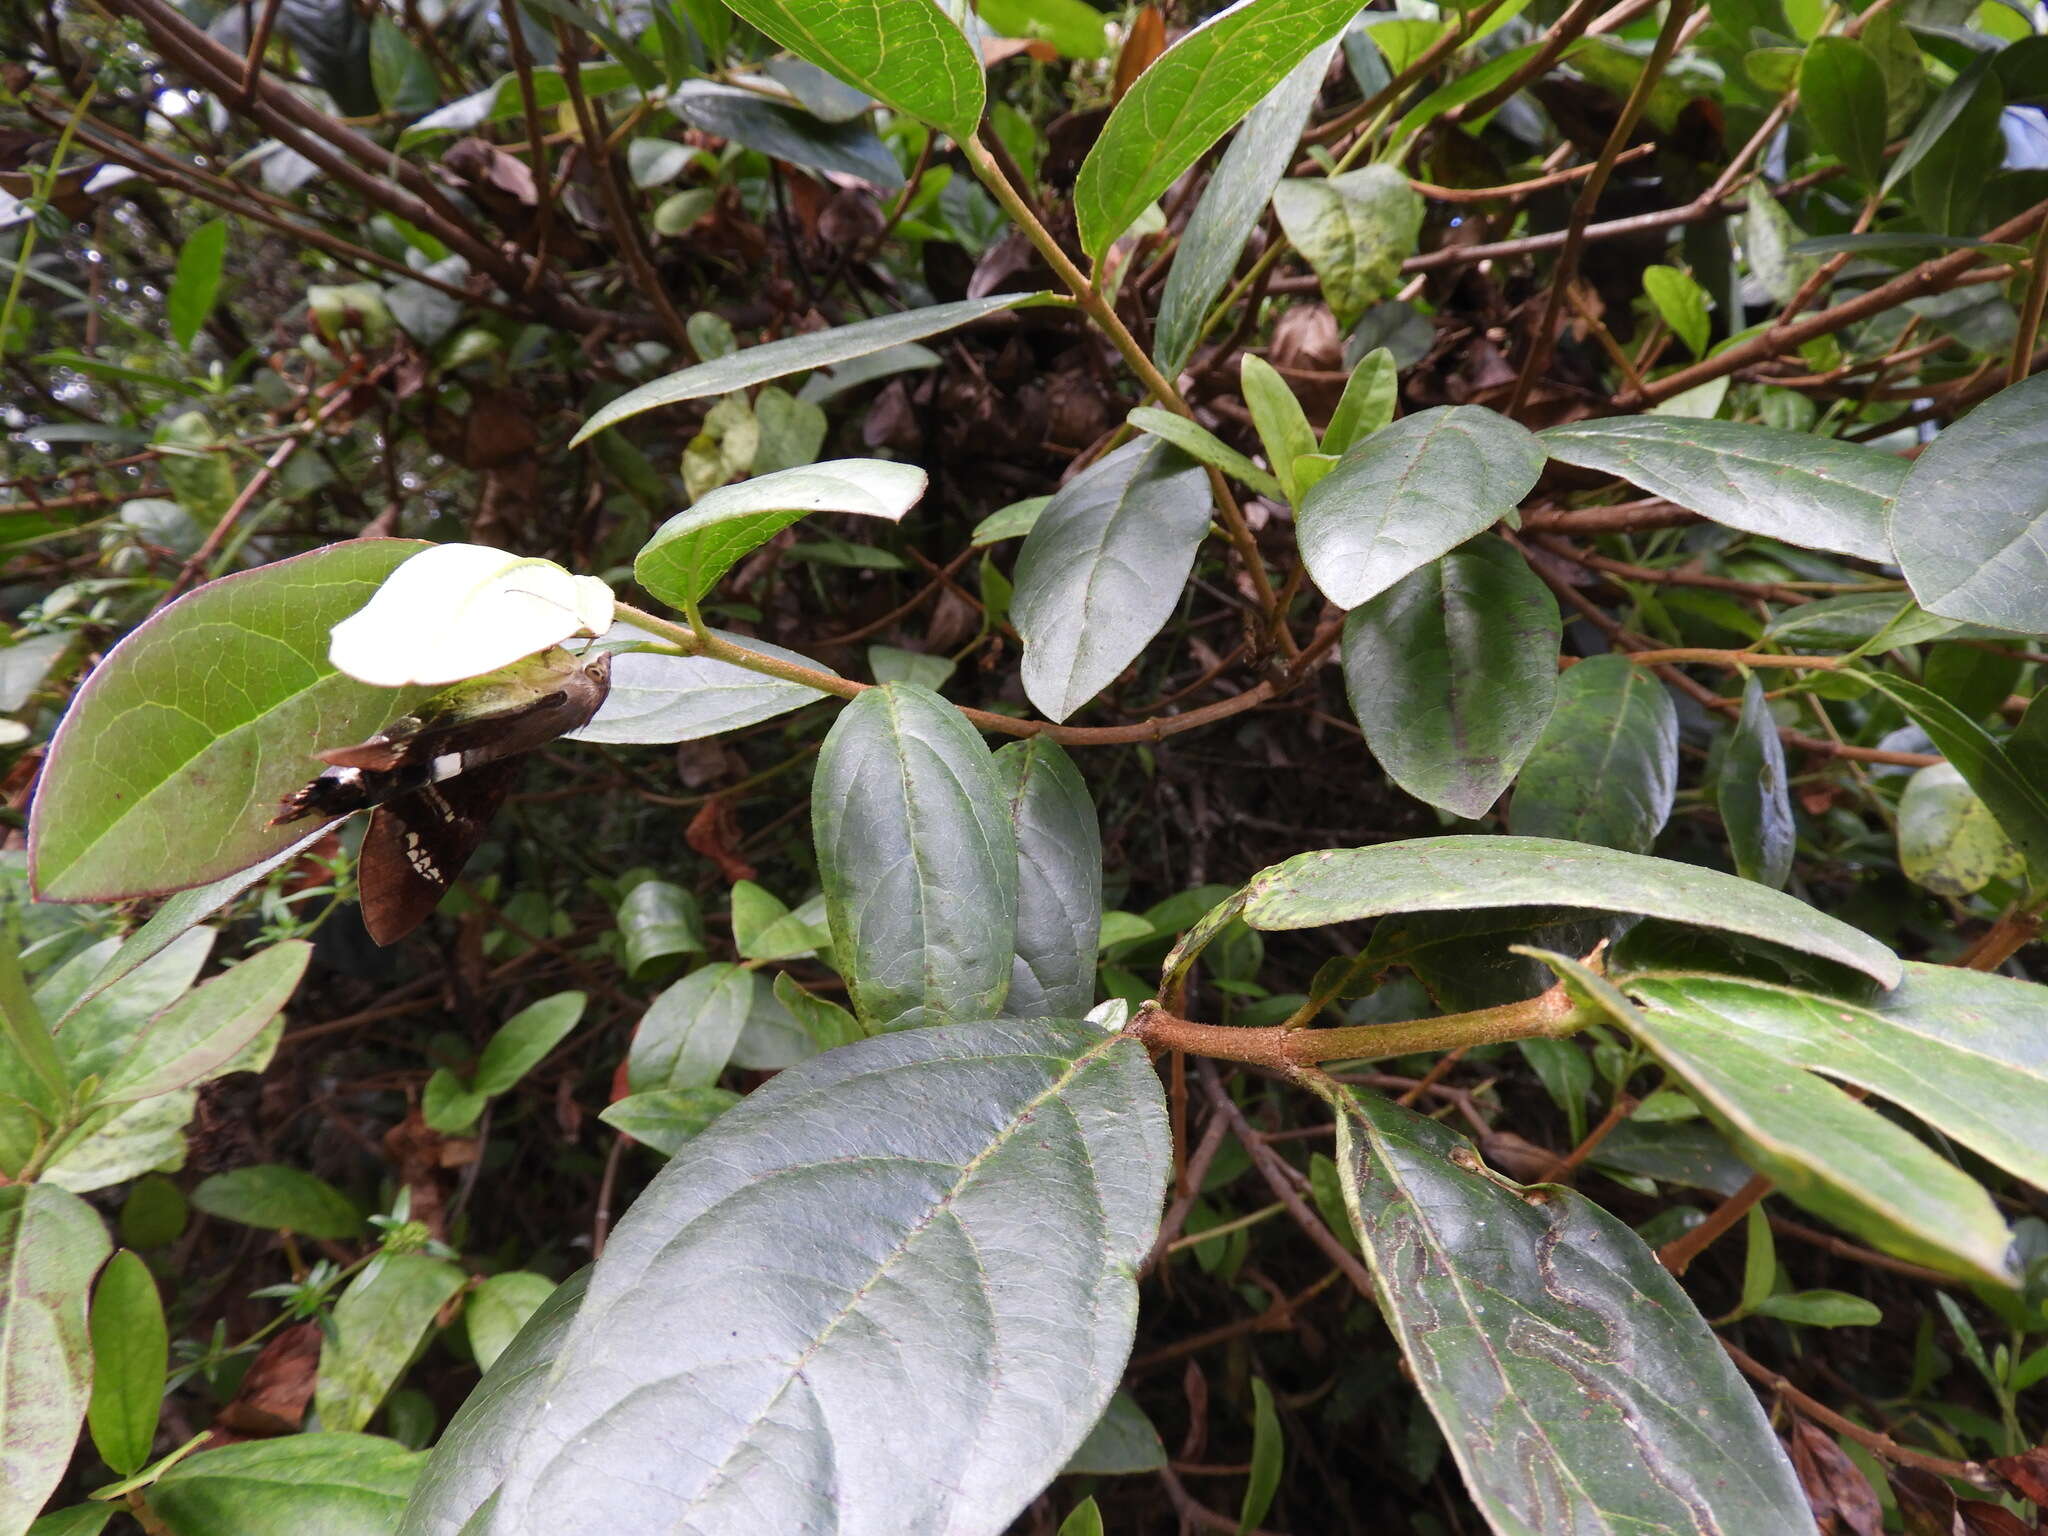 Image of Viburnum triphyllum Benth.